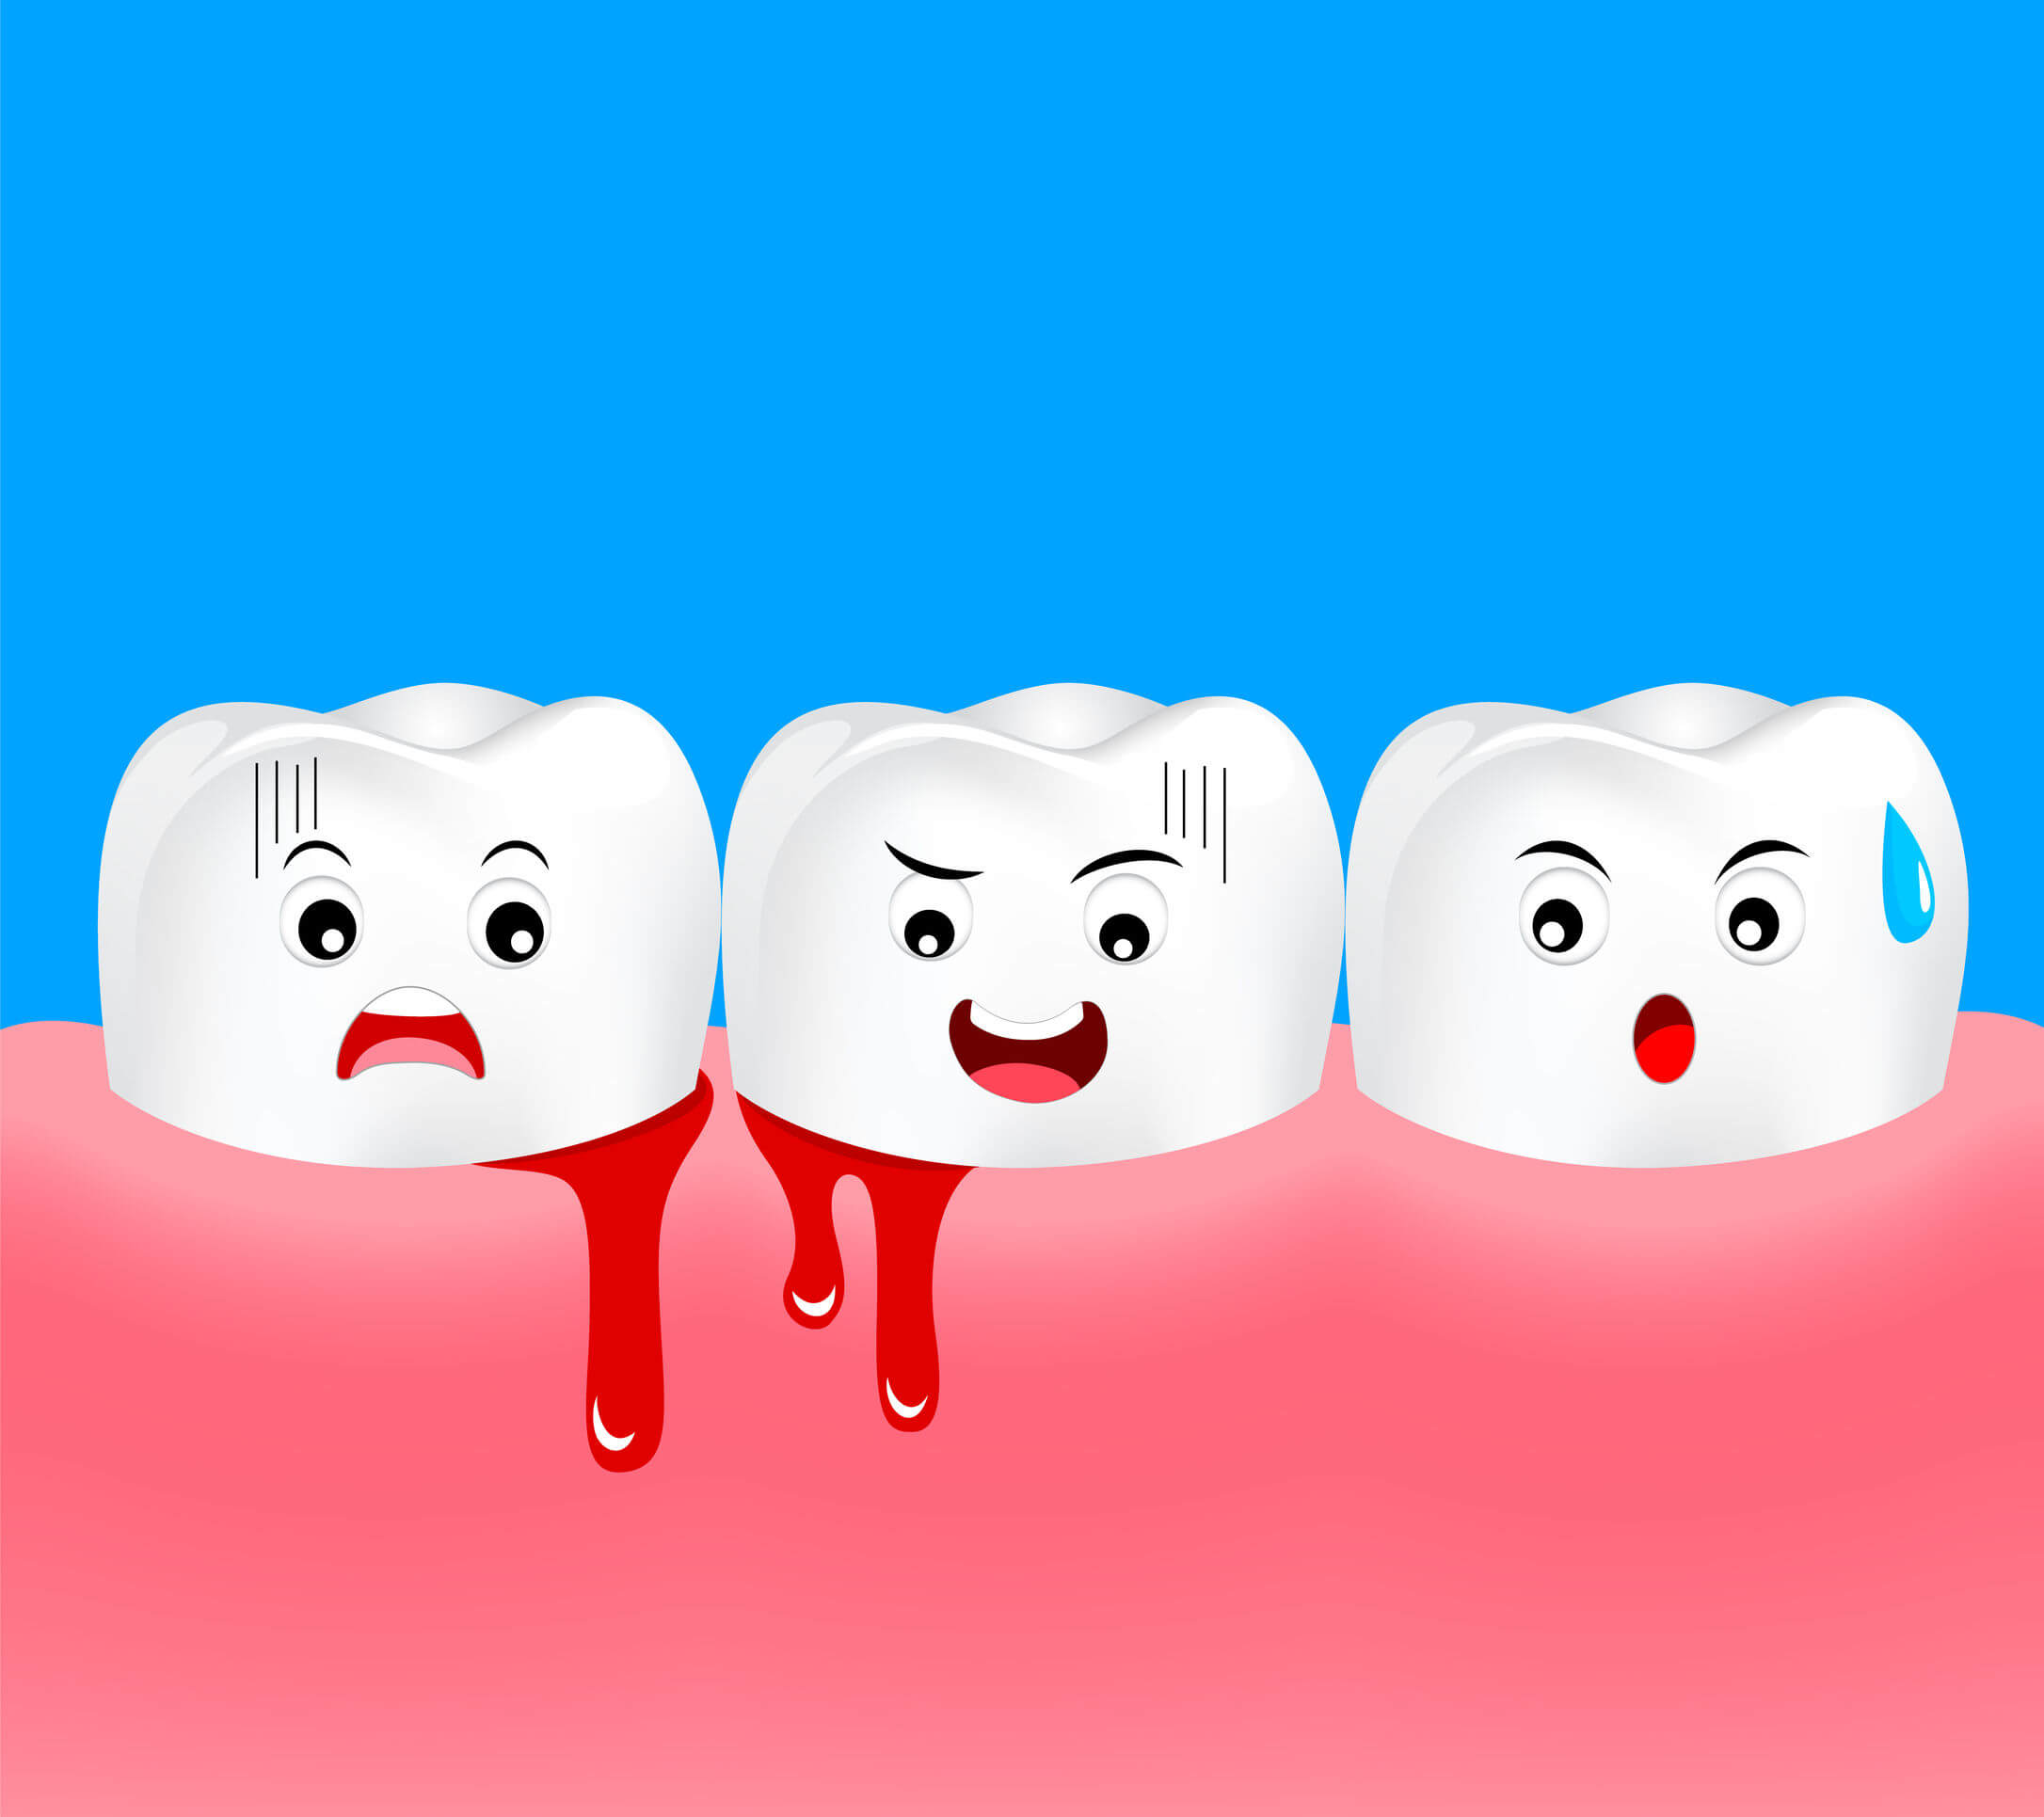 A cartoon image of bleeding gums.